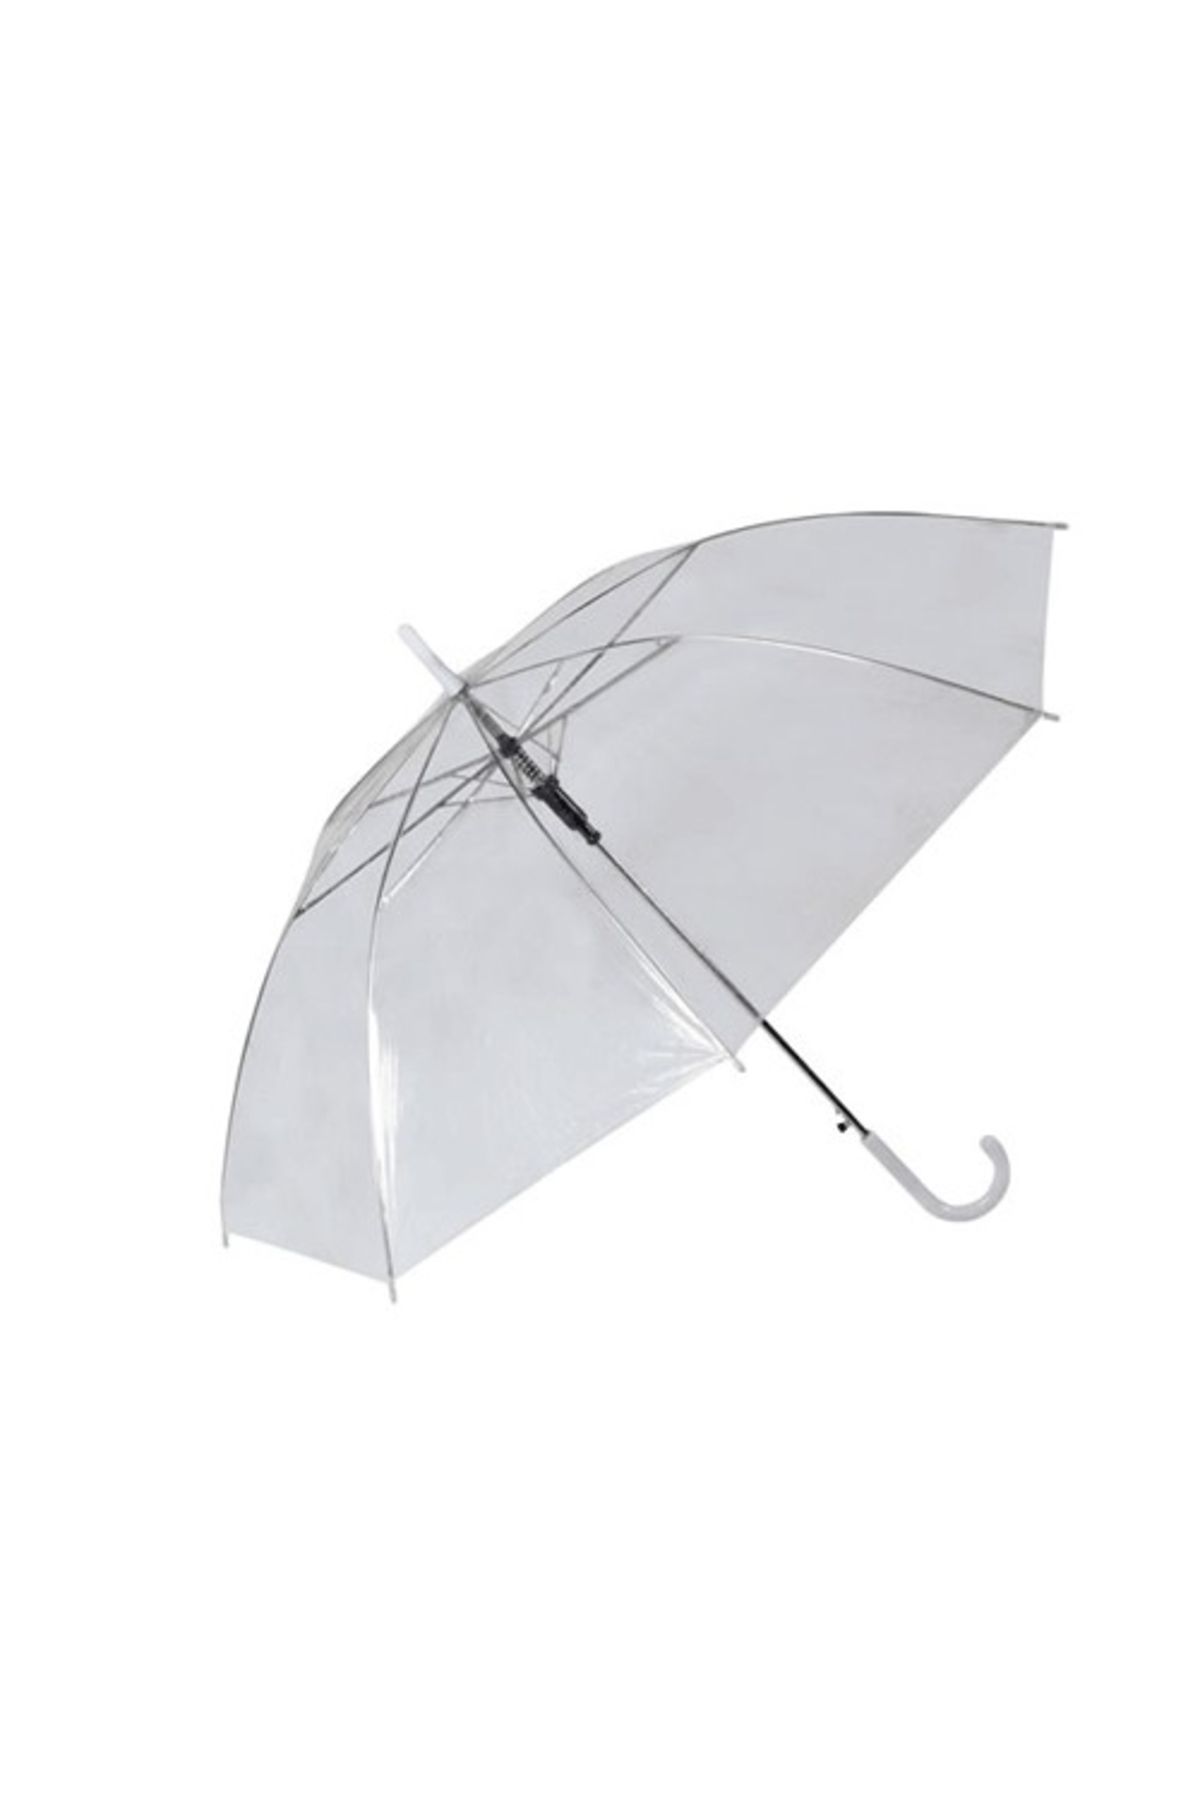 Yağmurum Hediyelik Çalkan mar 5316 Şemsiye Şeffaf Beyaz